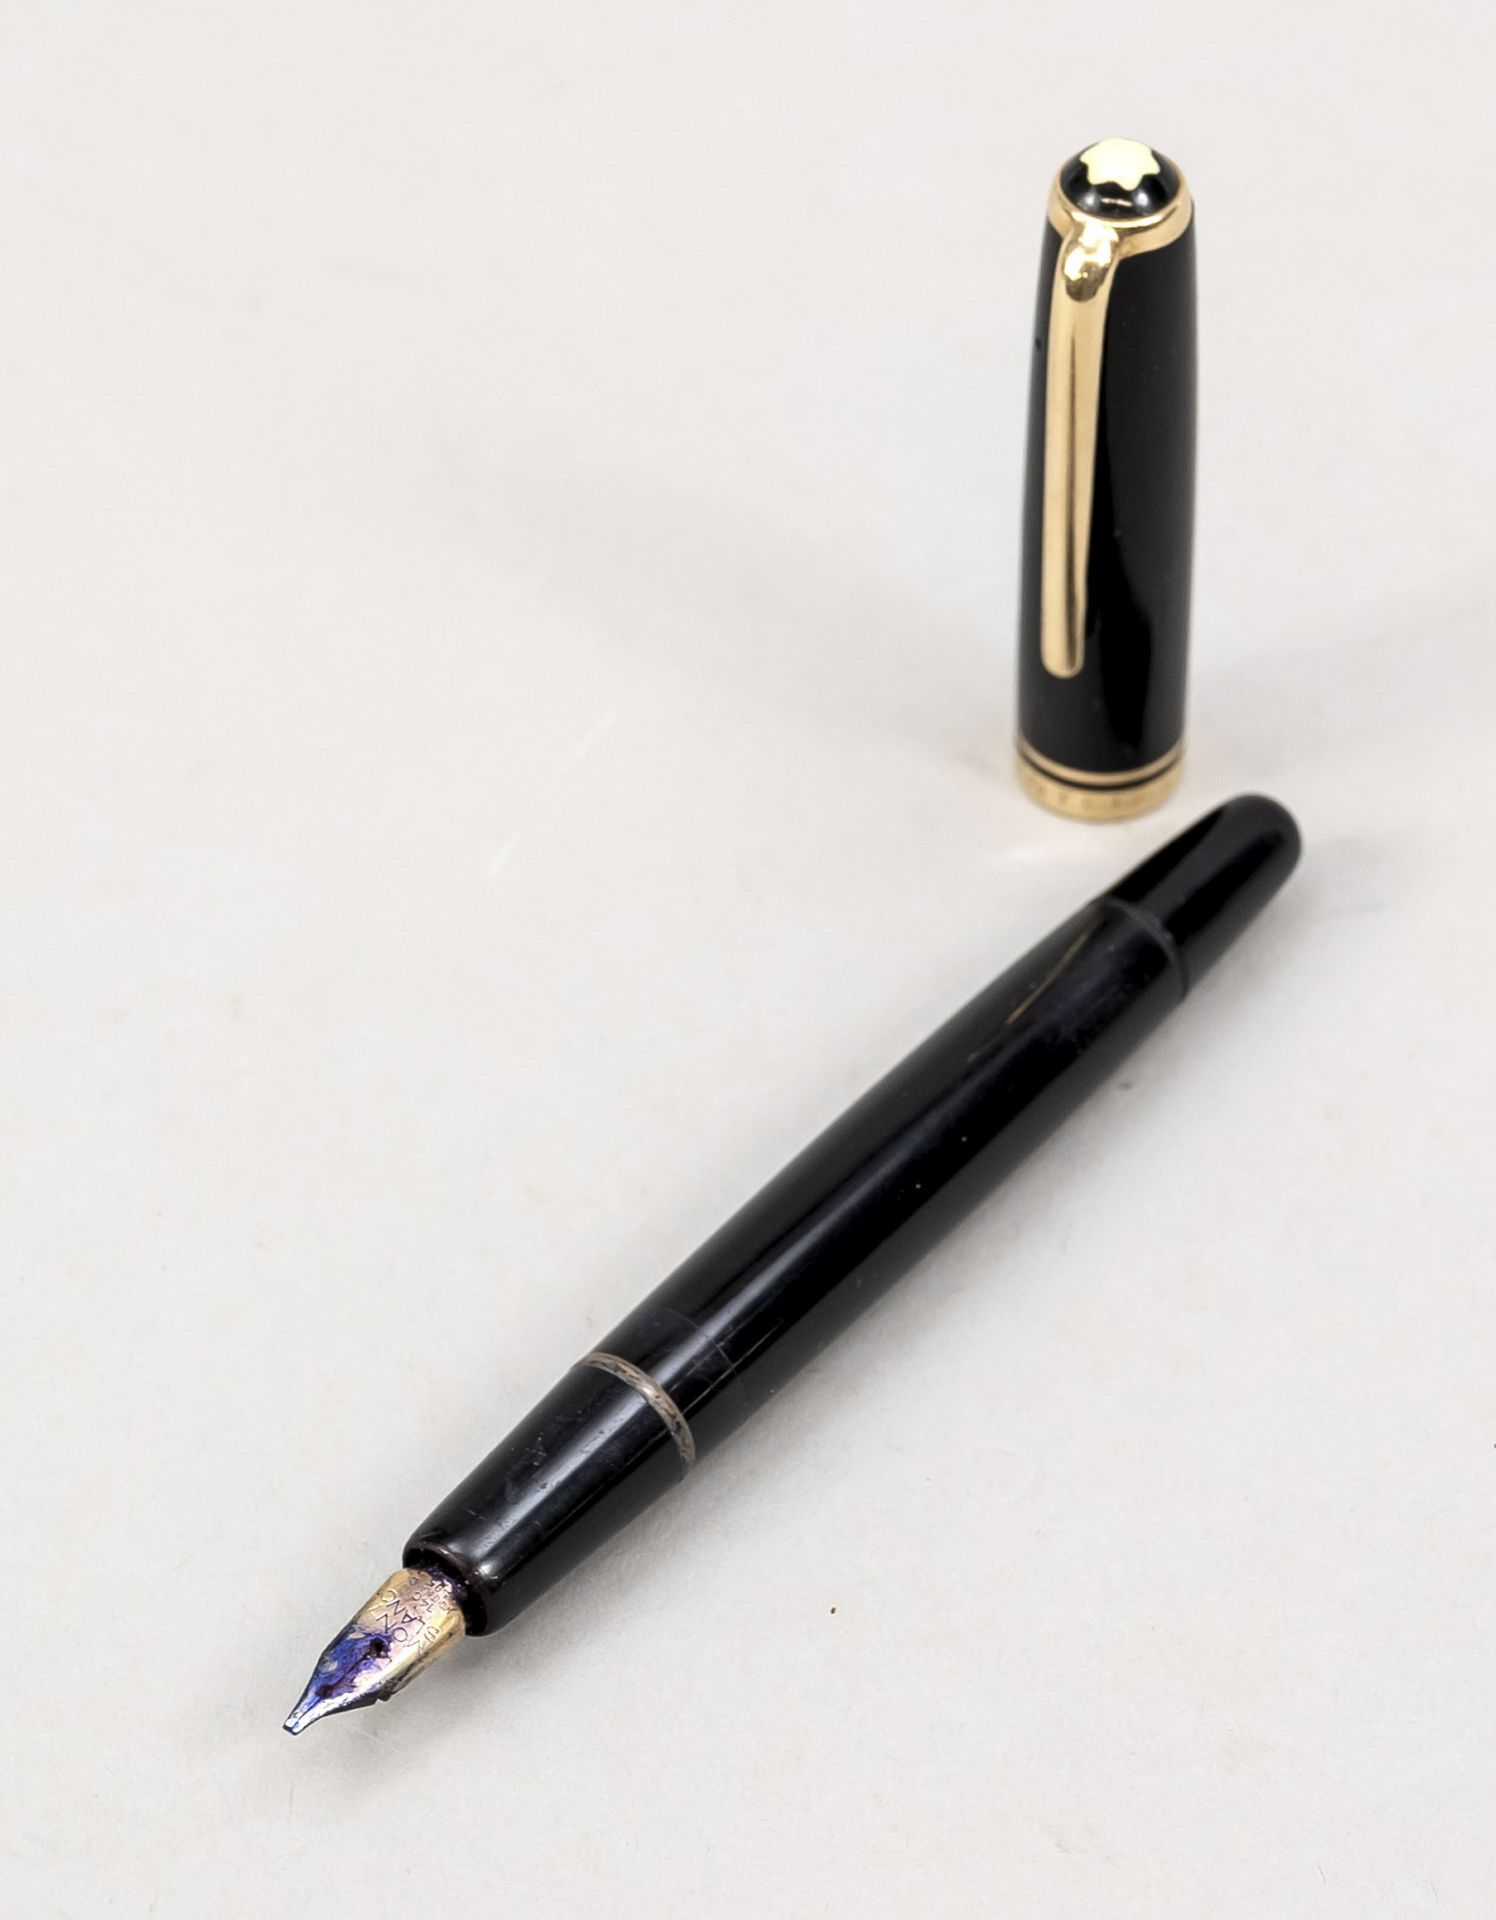 Montblanc piston fountain pen, 1960s (?), No. 254, 14 ct (585) yellow gold nib, black case, gilded